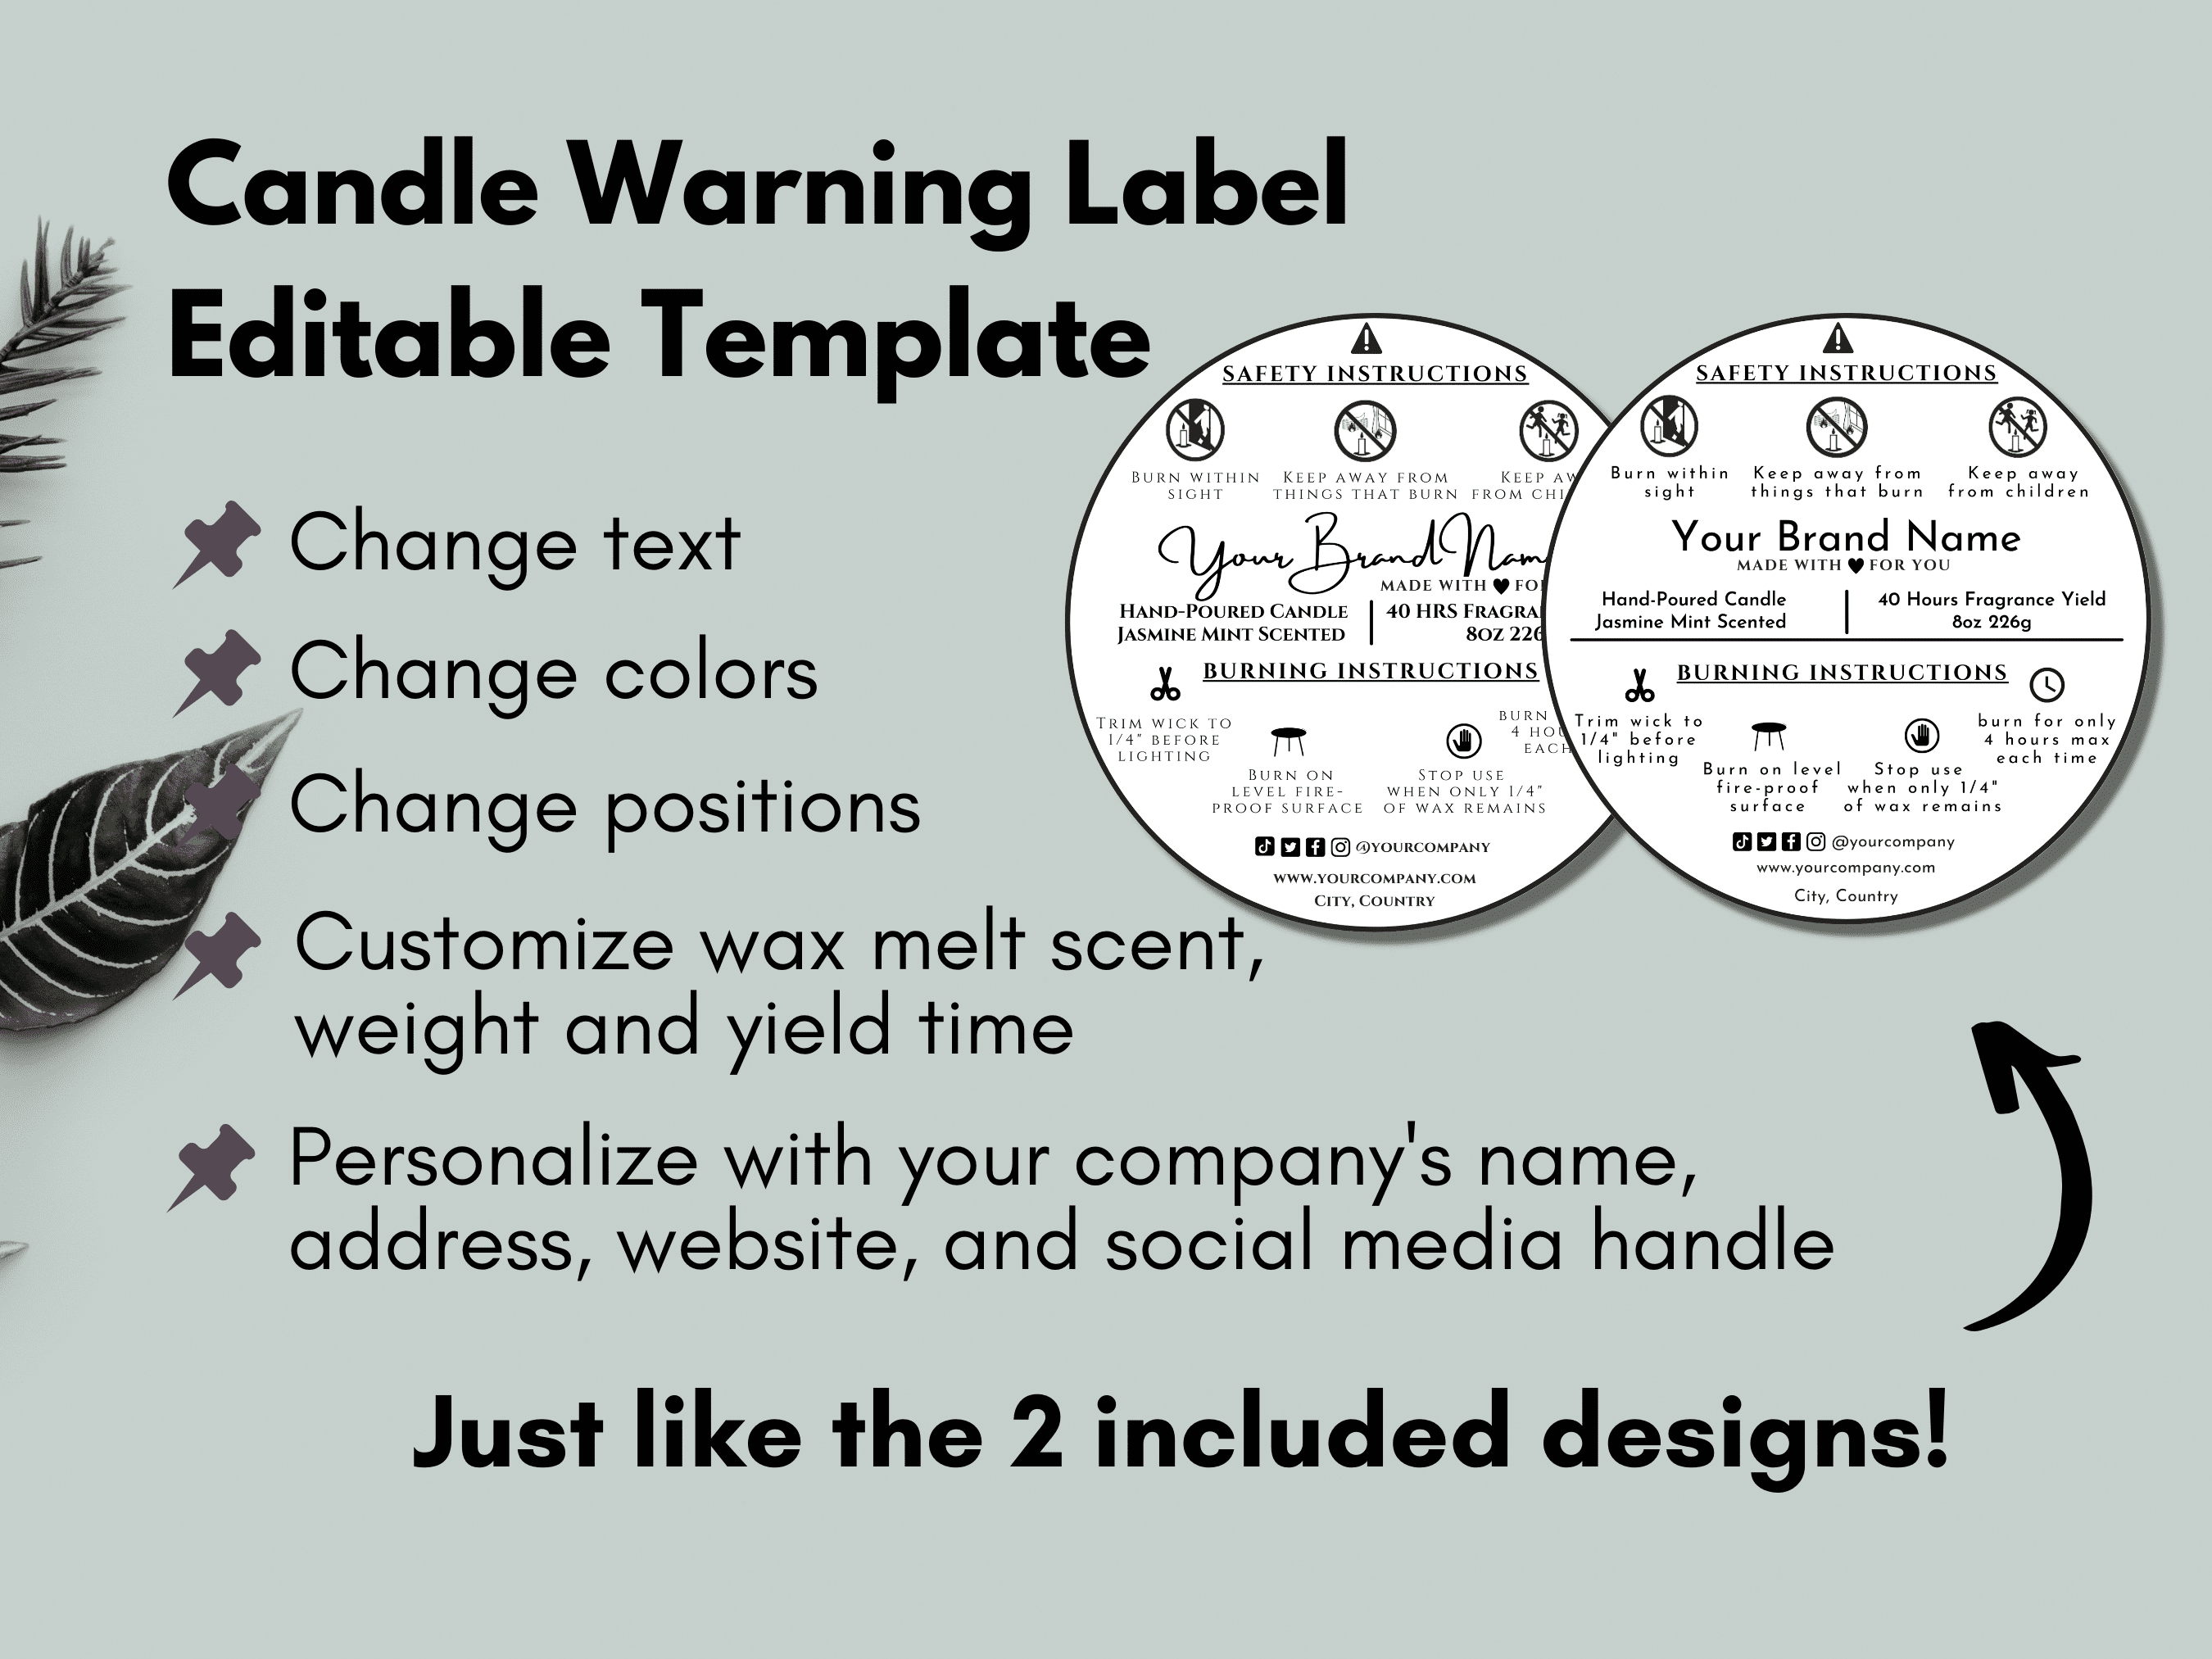 Candle Warning Label Template v2 – 413 Studio Design Co